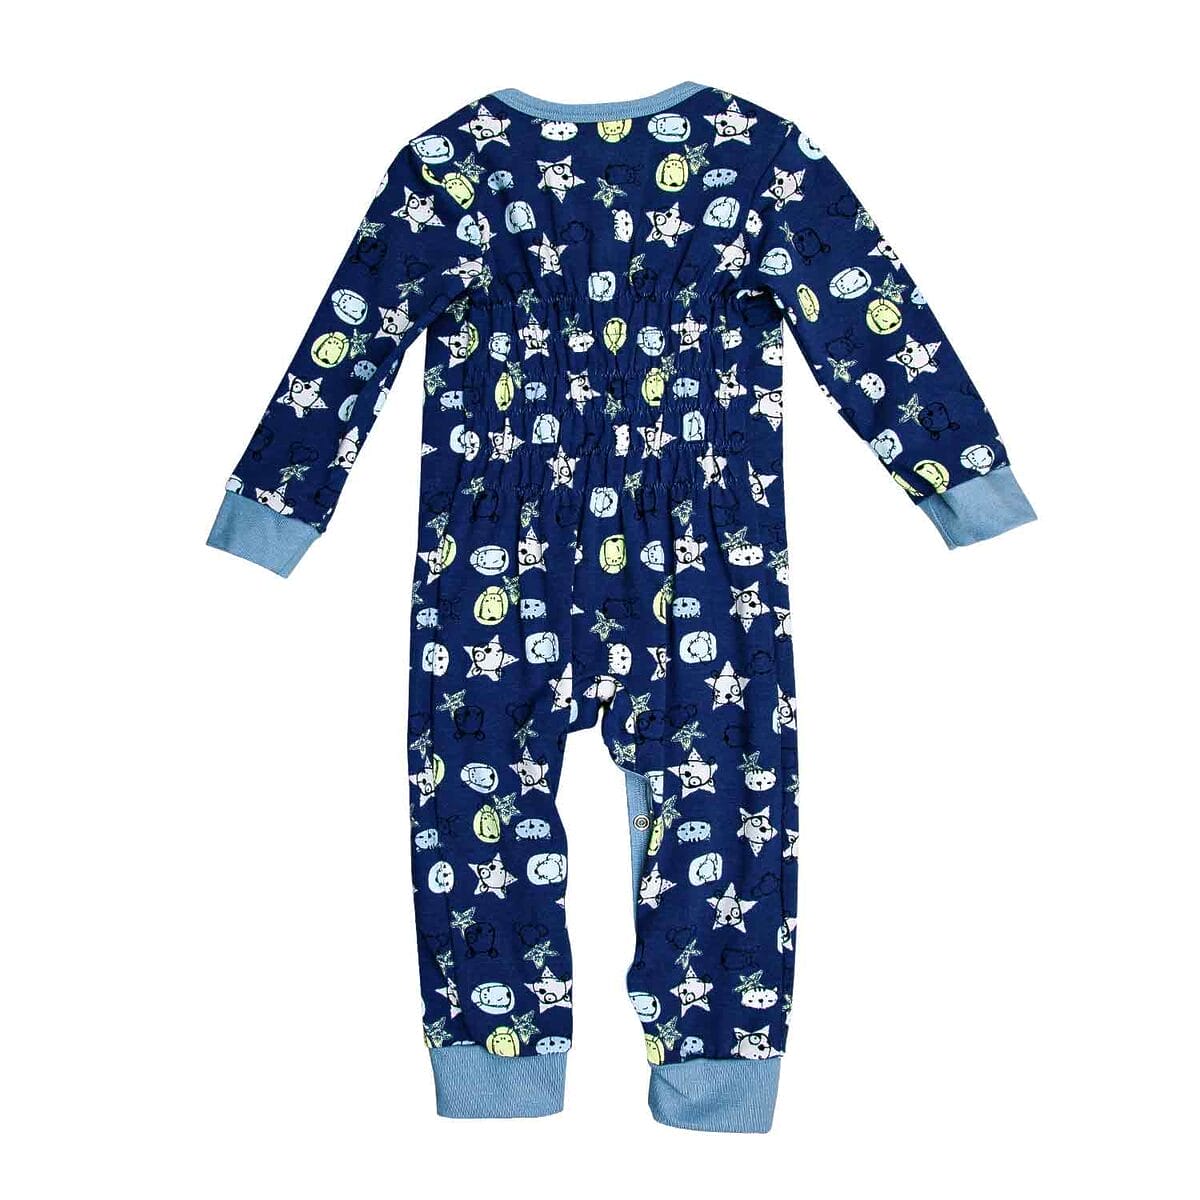 Rückansicht des dunkelblauen Babyschlafanzugs aus Bio-Baumwolle mit Tiermotiven und bequemen Bündchen an den Ärmeln und Beinen.